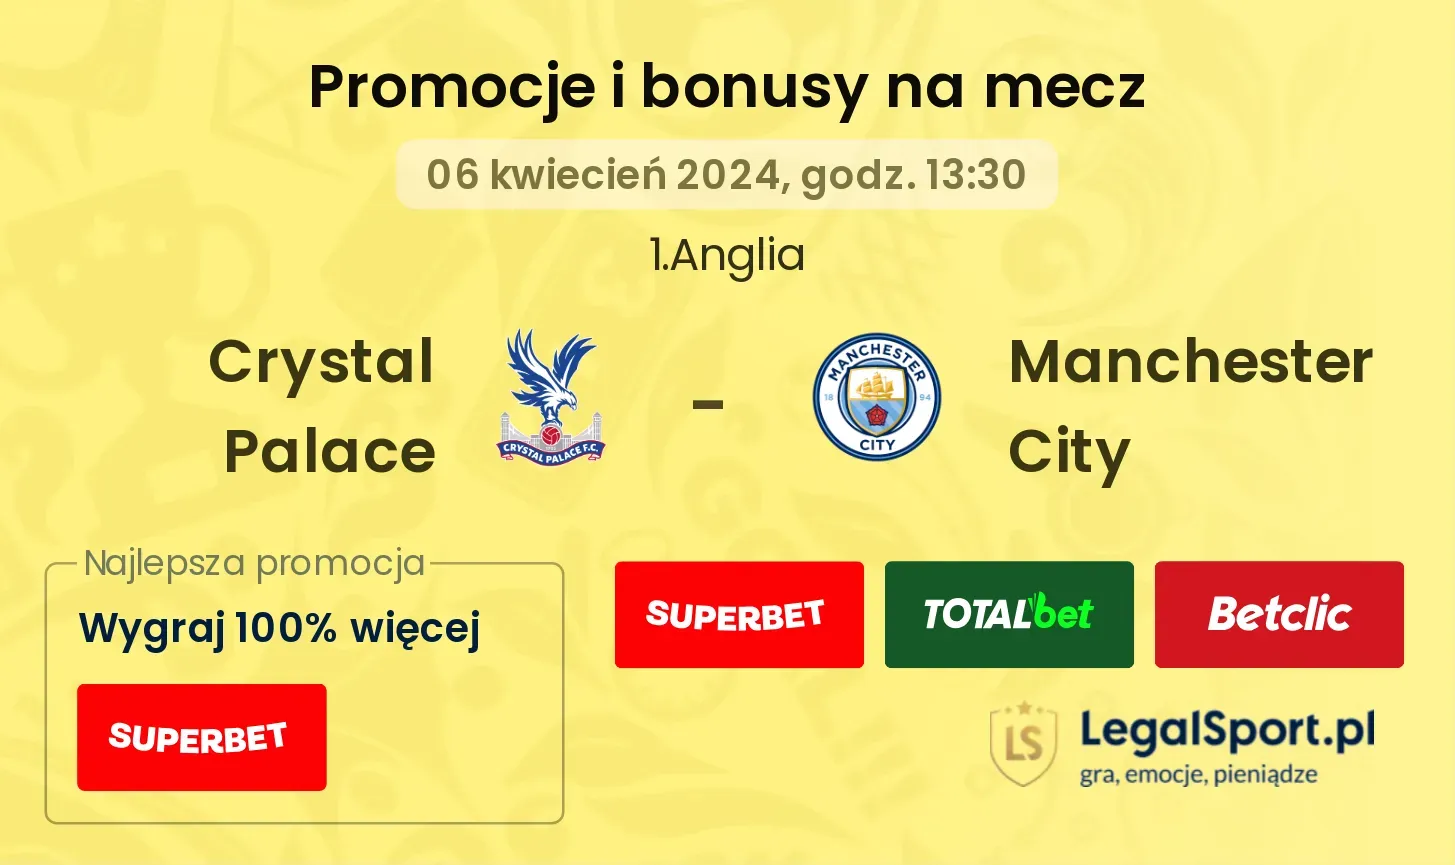 Crystal Palace - Manchester City promocje bonusy na mecz